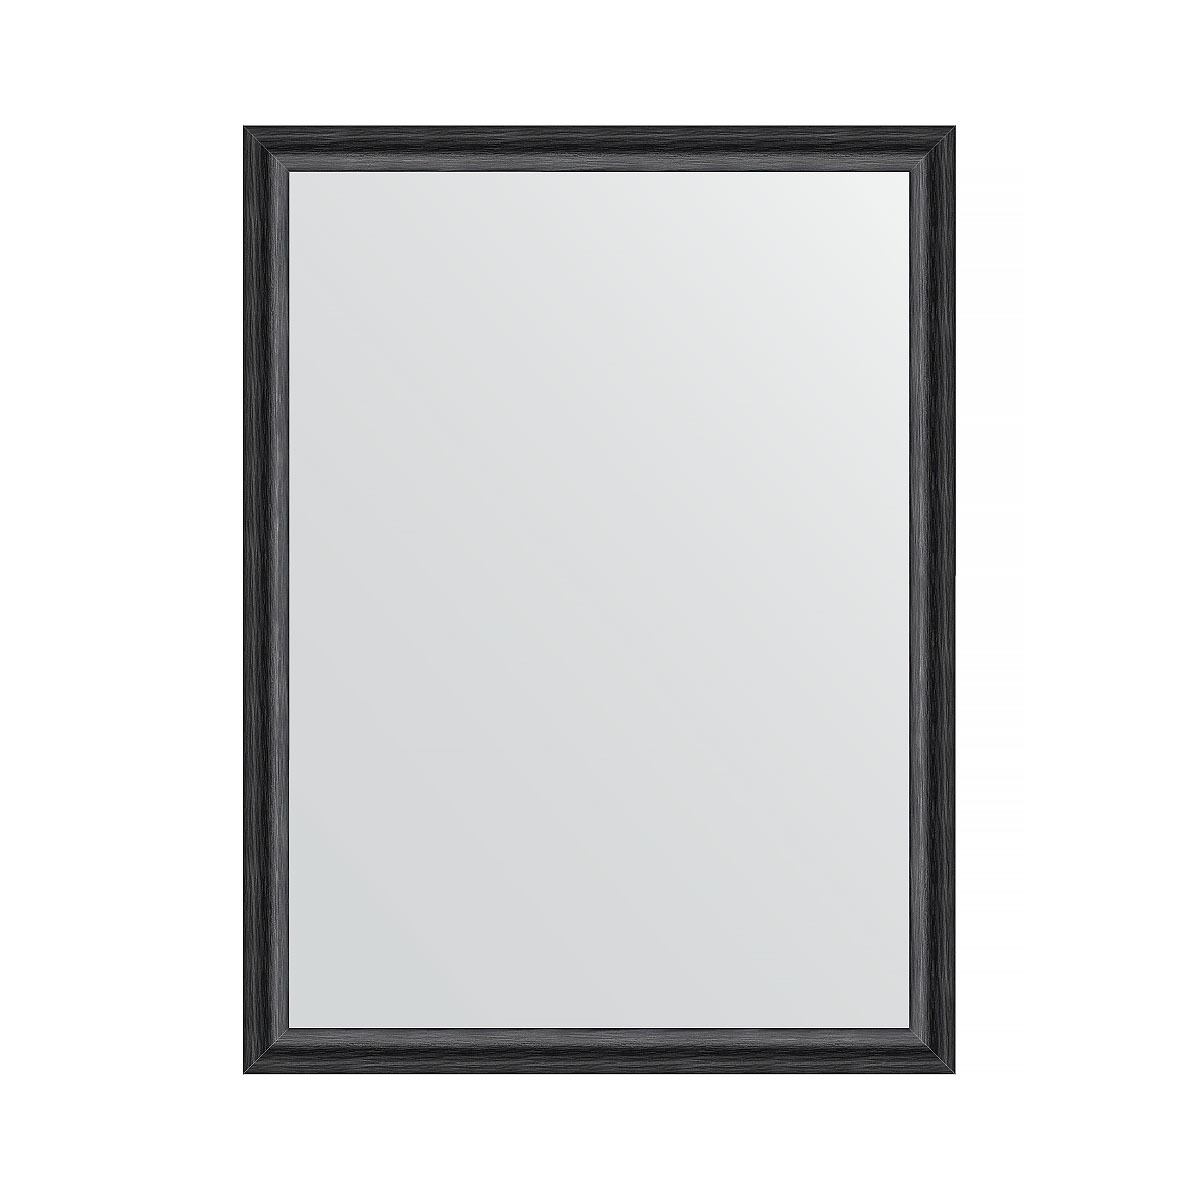 Зеркало в багетной раме Evoform черный дуб 37 мм 60х80 см зеркало evoform в багетной раме 56х86см bx 1239